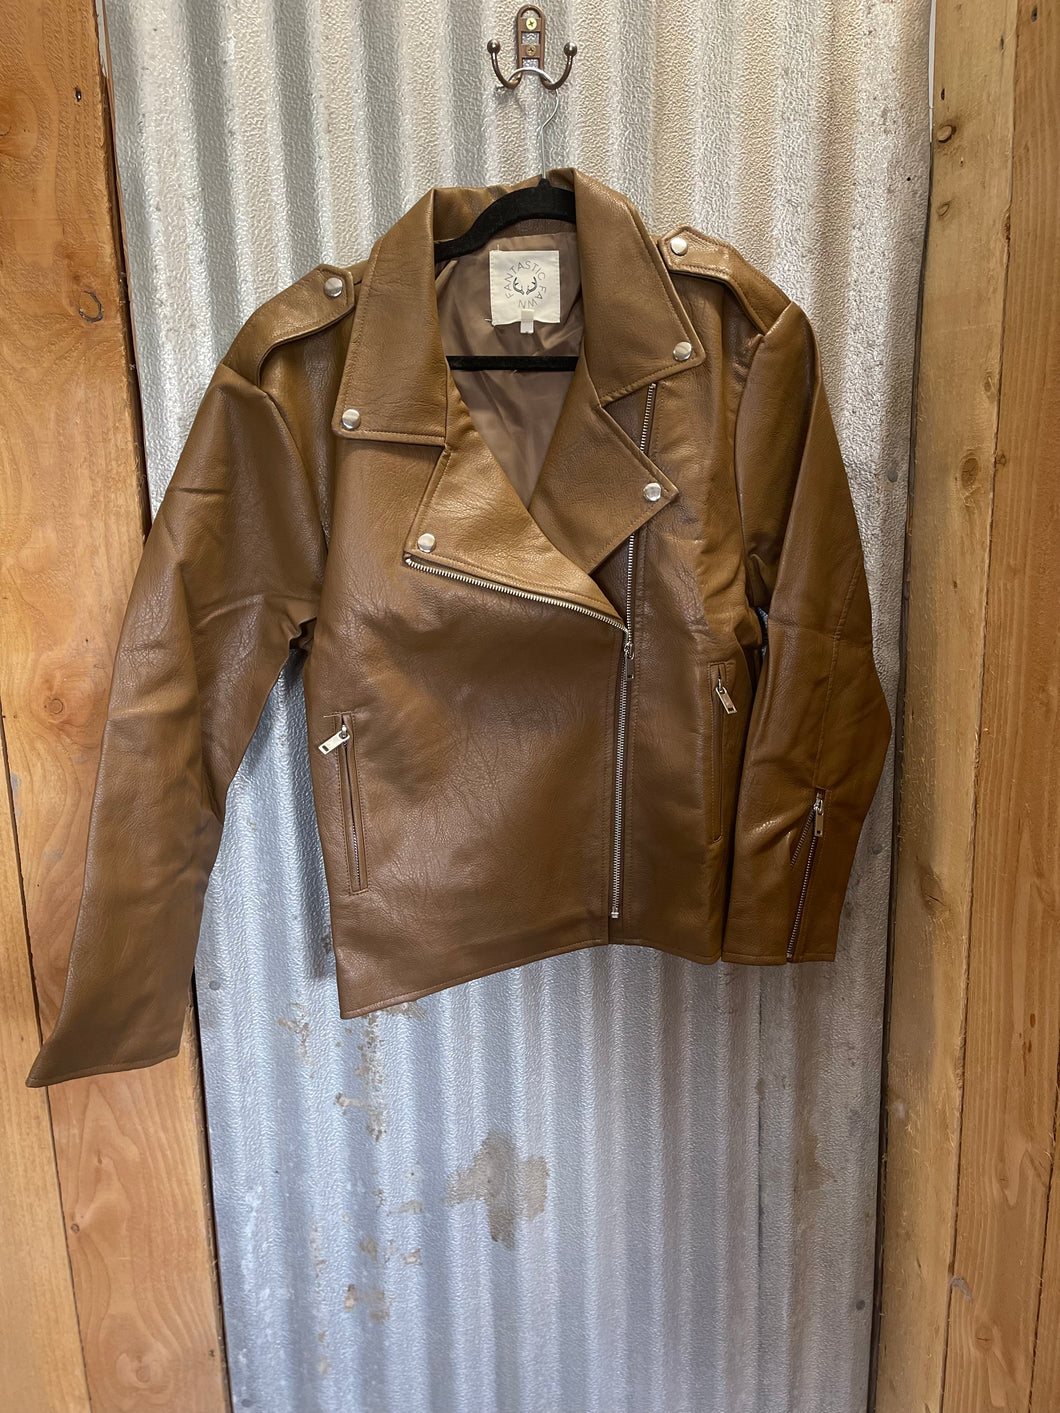 MEDIUM: NWT Faux Leather Jacket